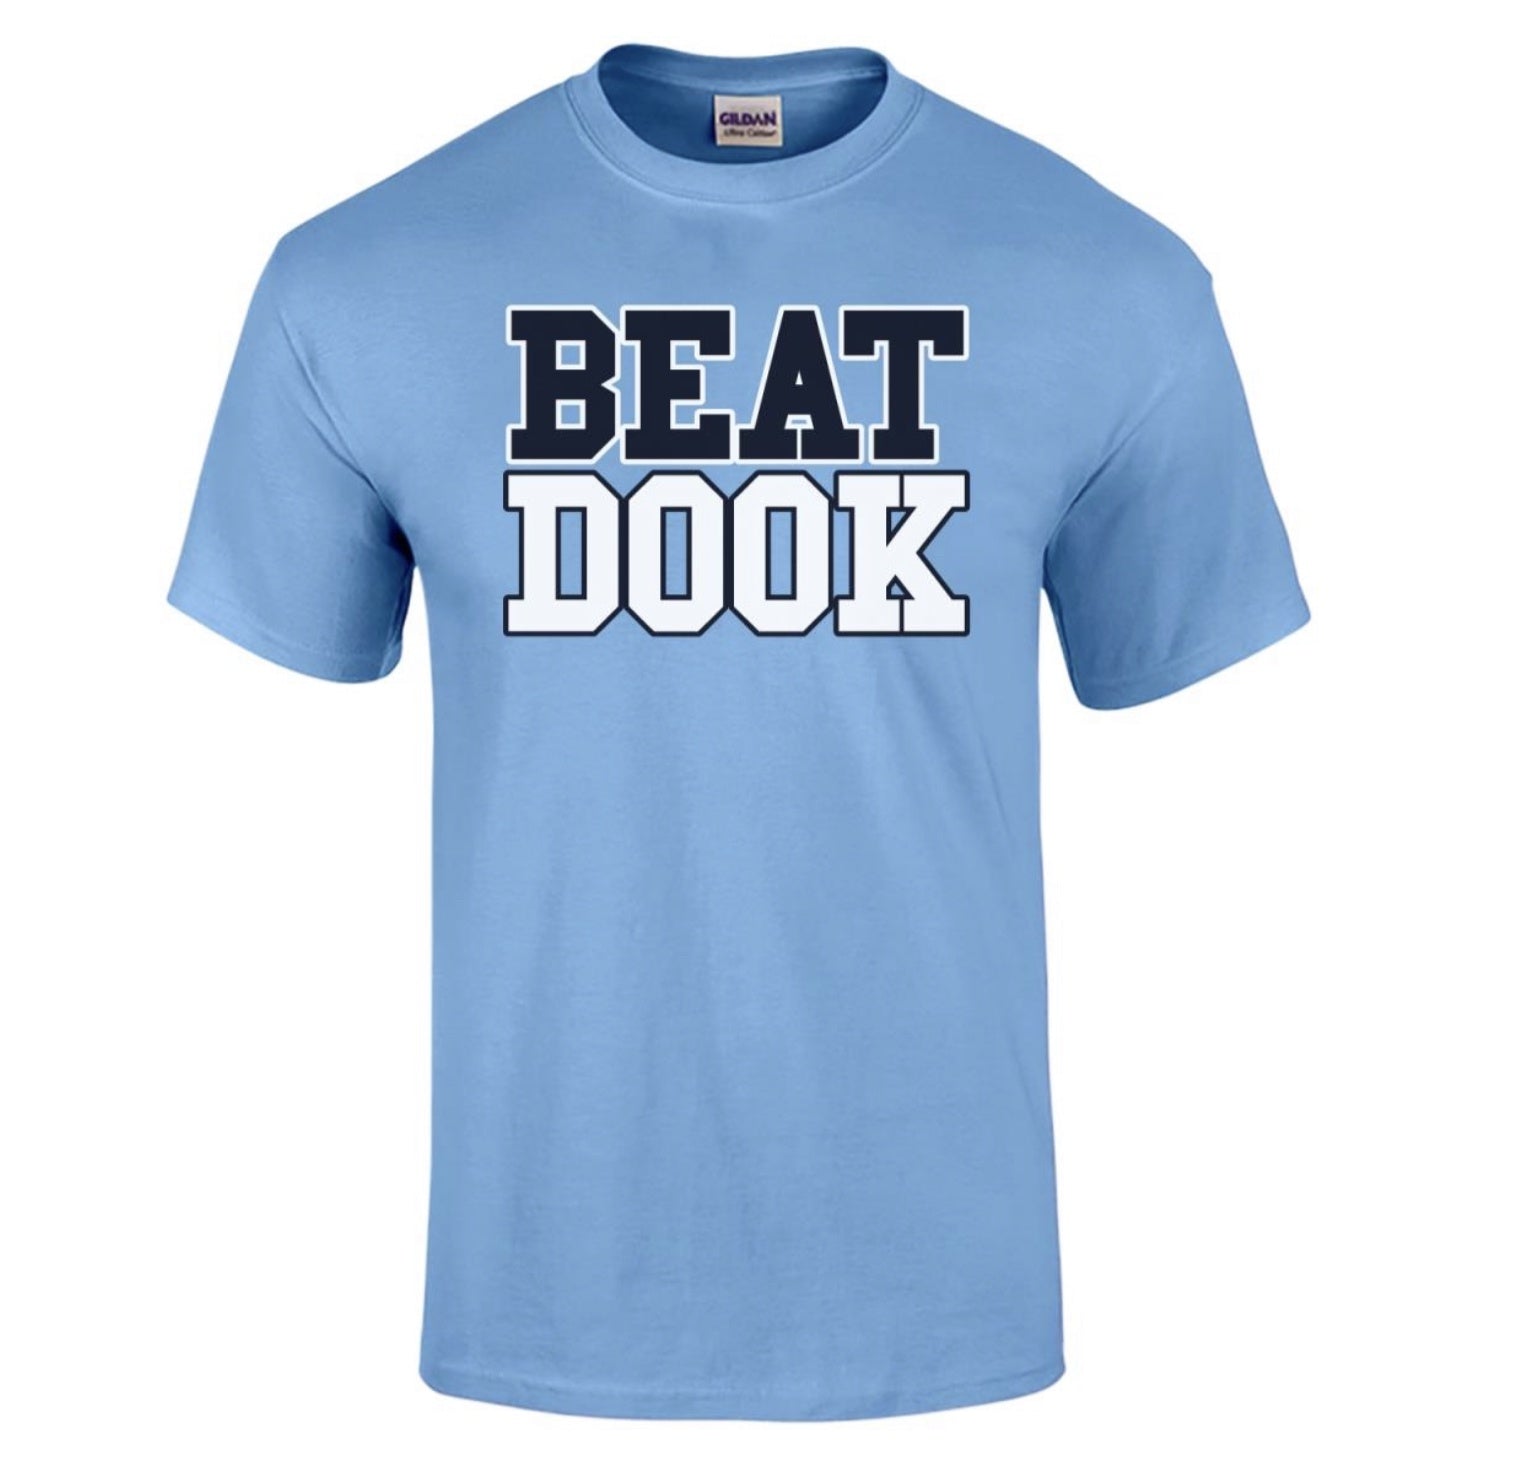 Beat Dook T-Shirt - Shrunken Head Boutique S